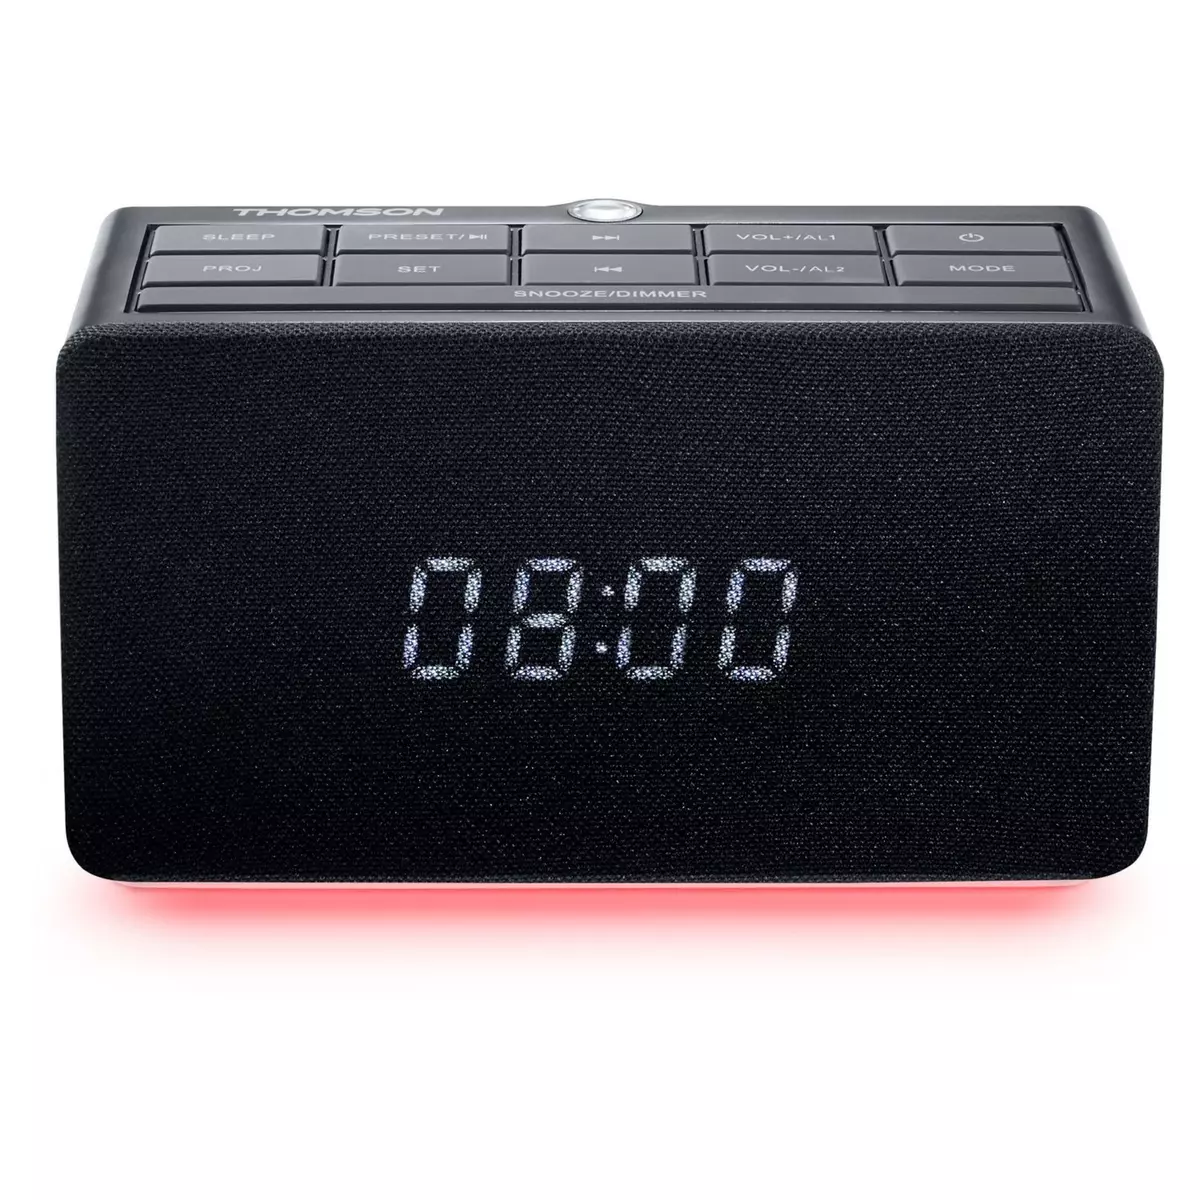 THOMSON Radio réveil avec projecteur - Noir - CL300P